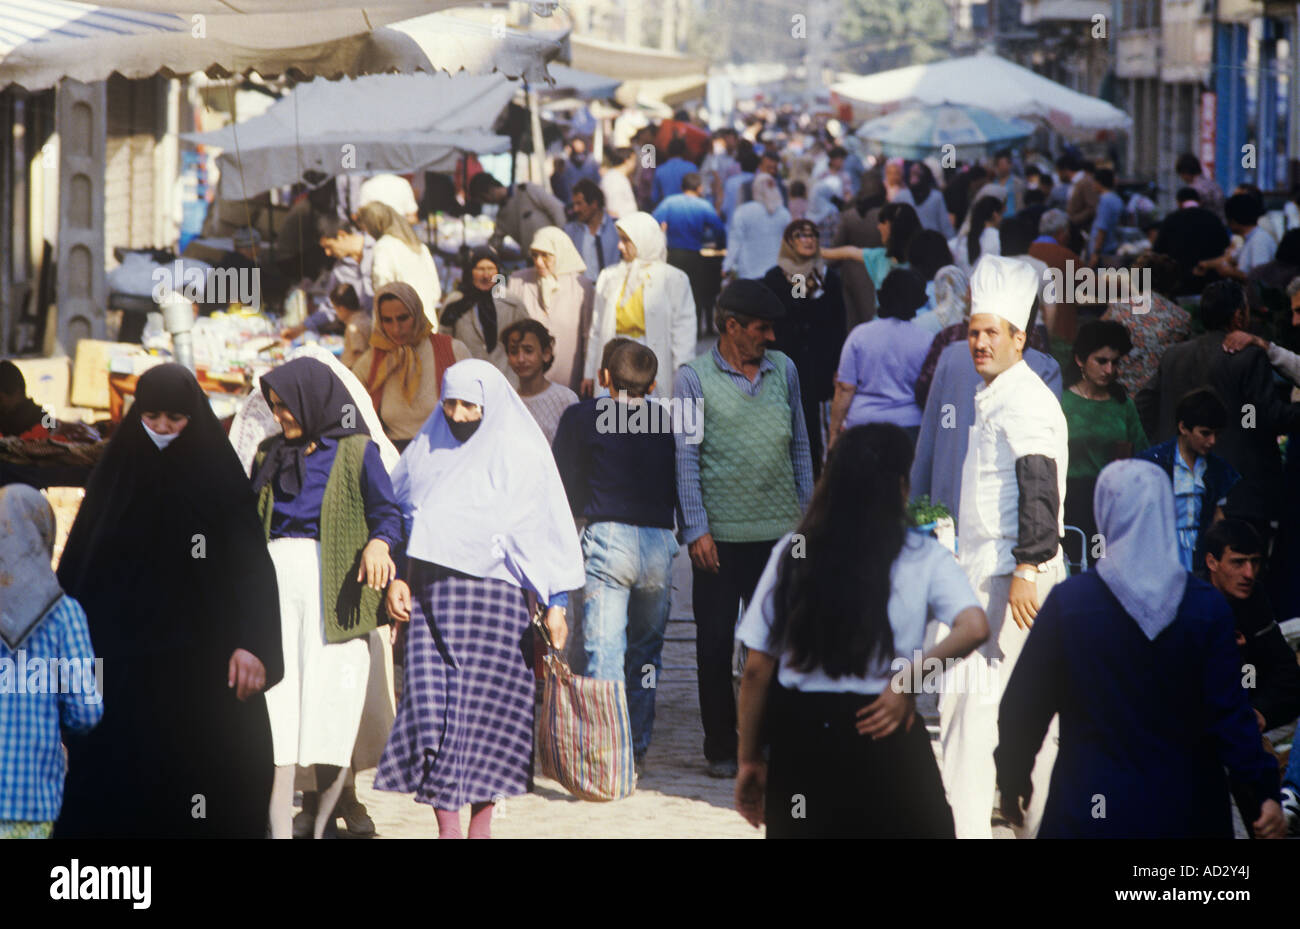 Türkei, Yalowa in Ostanatolien, eine gemischte Bevölkerung. Die Stadt ist für ihre heißen Quellen bekannt, das Bild zeigt die belebte Straße am Markttag. Stockfoto